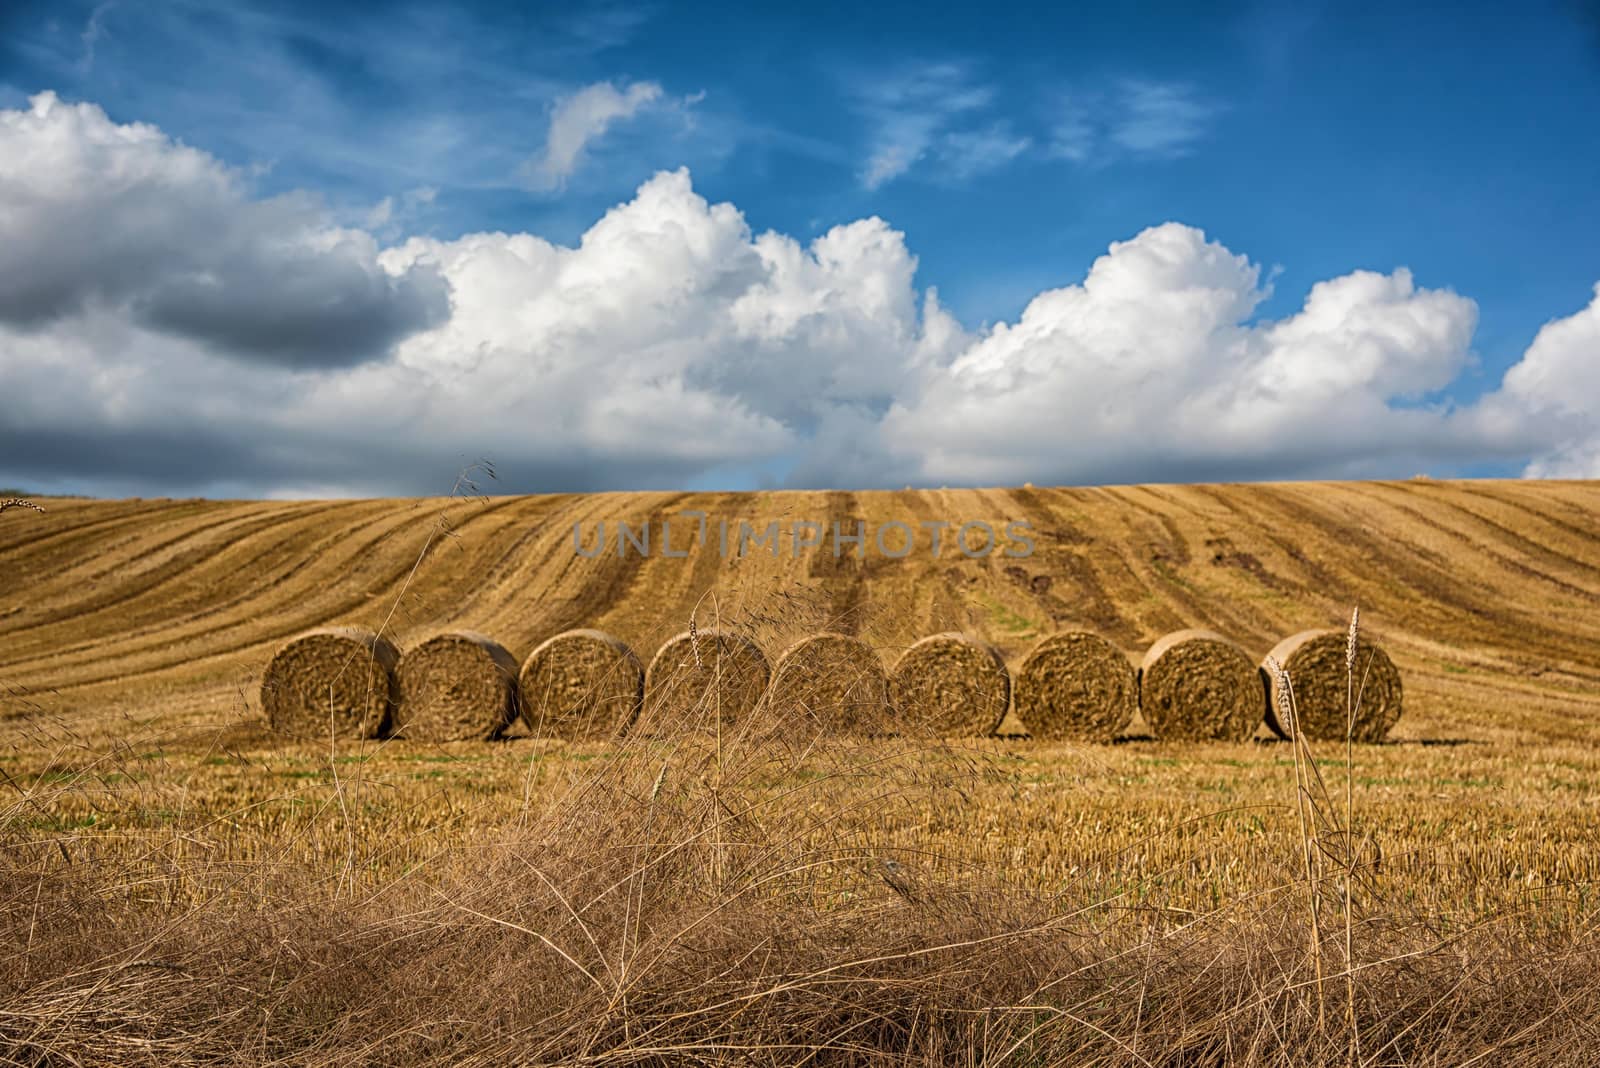 rolls of hay in field, Germany